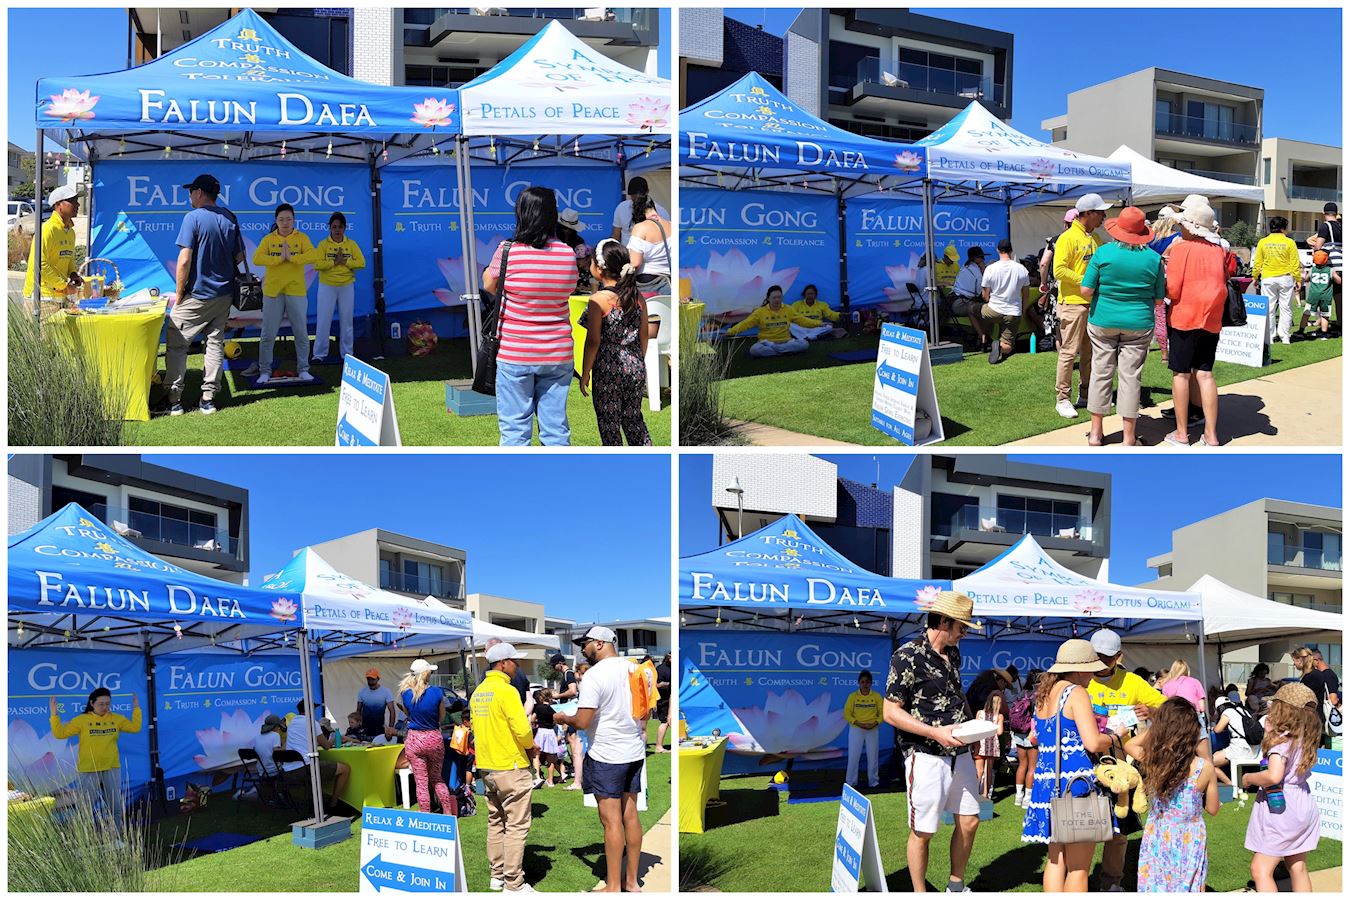 Image for article Austrália: O Falun Dafa é bem recebido no evento comunitário Coogee Live em Perth